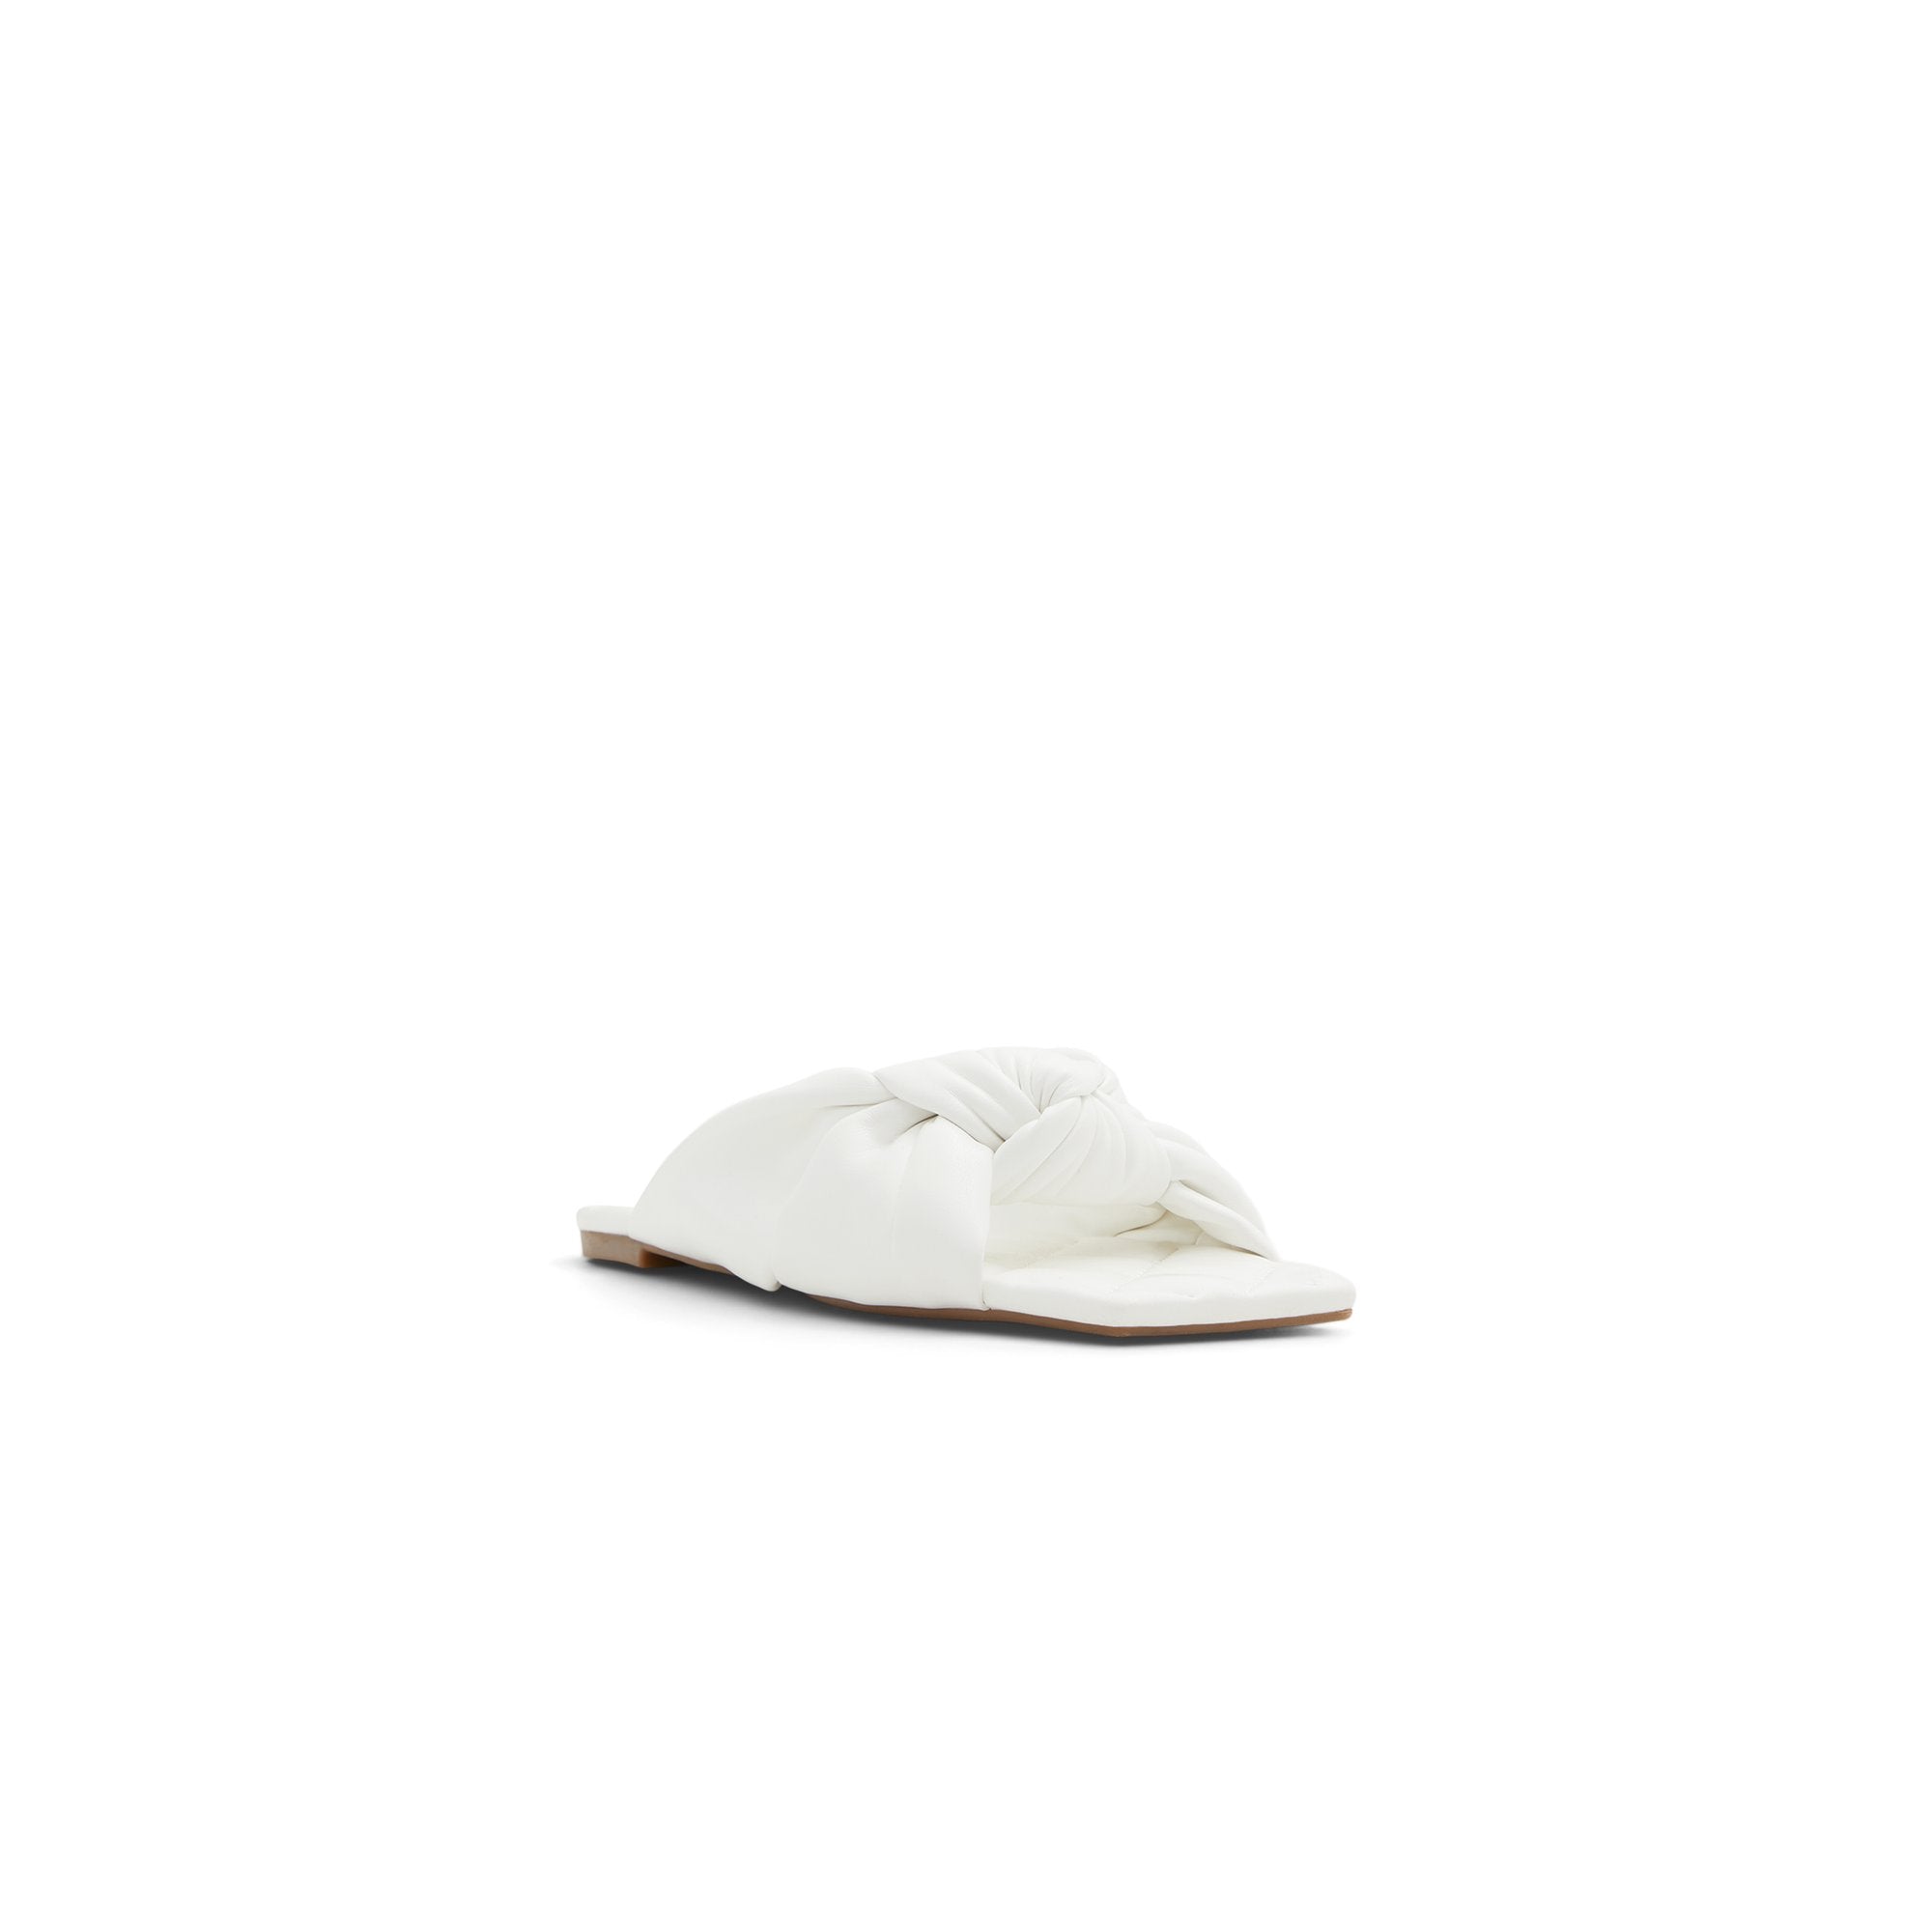 Simeoni Women Shoes - White - CALL IT SPRING KSA